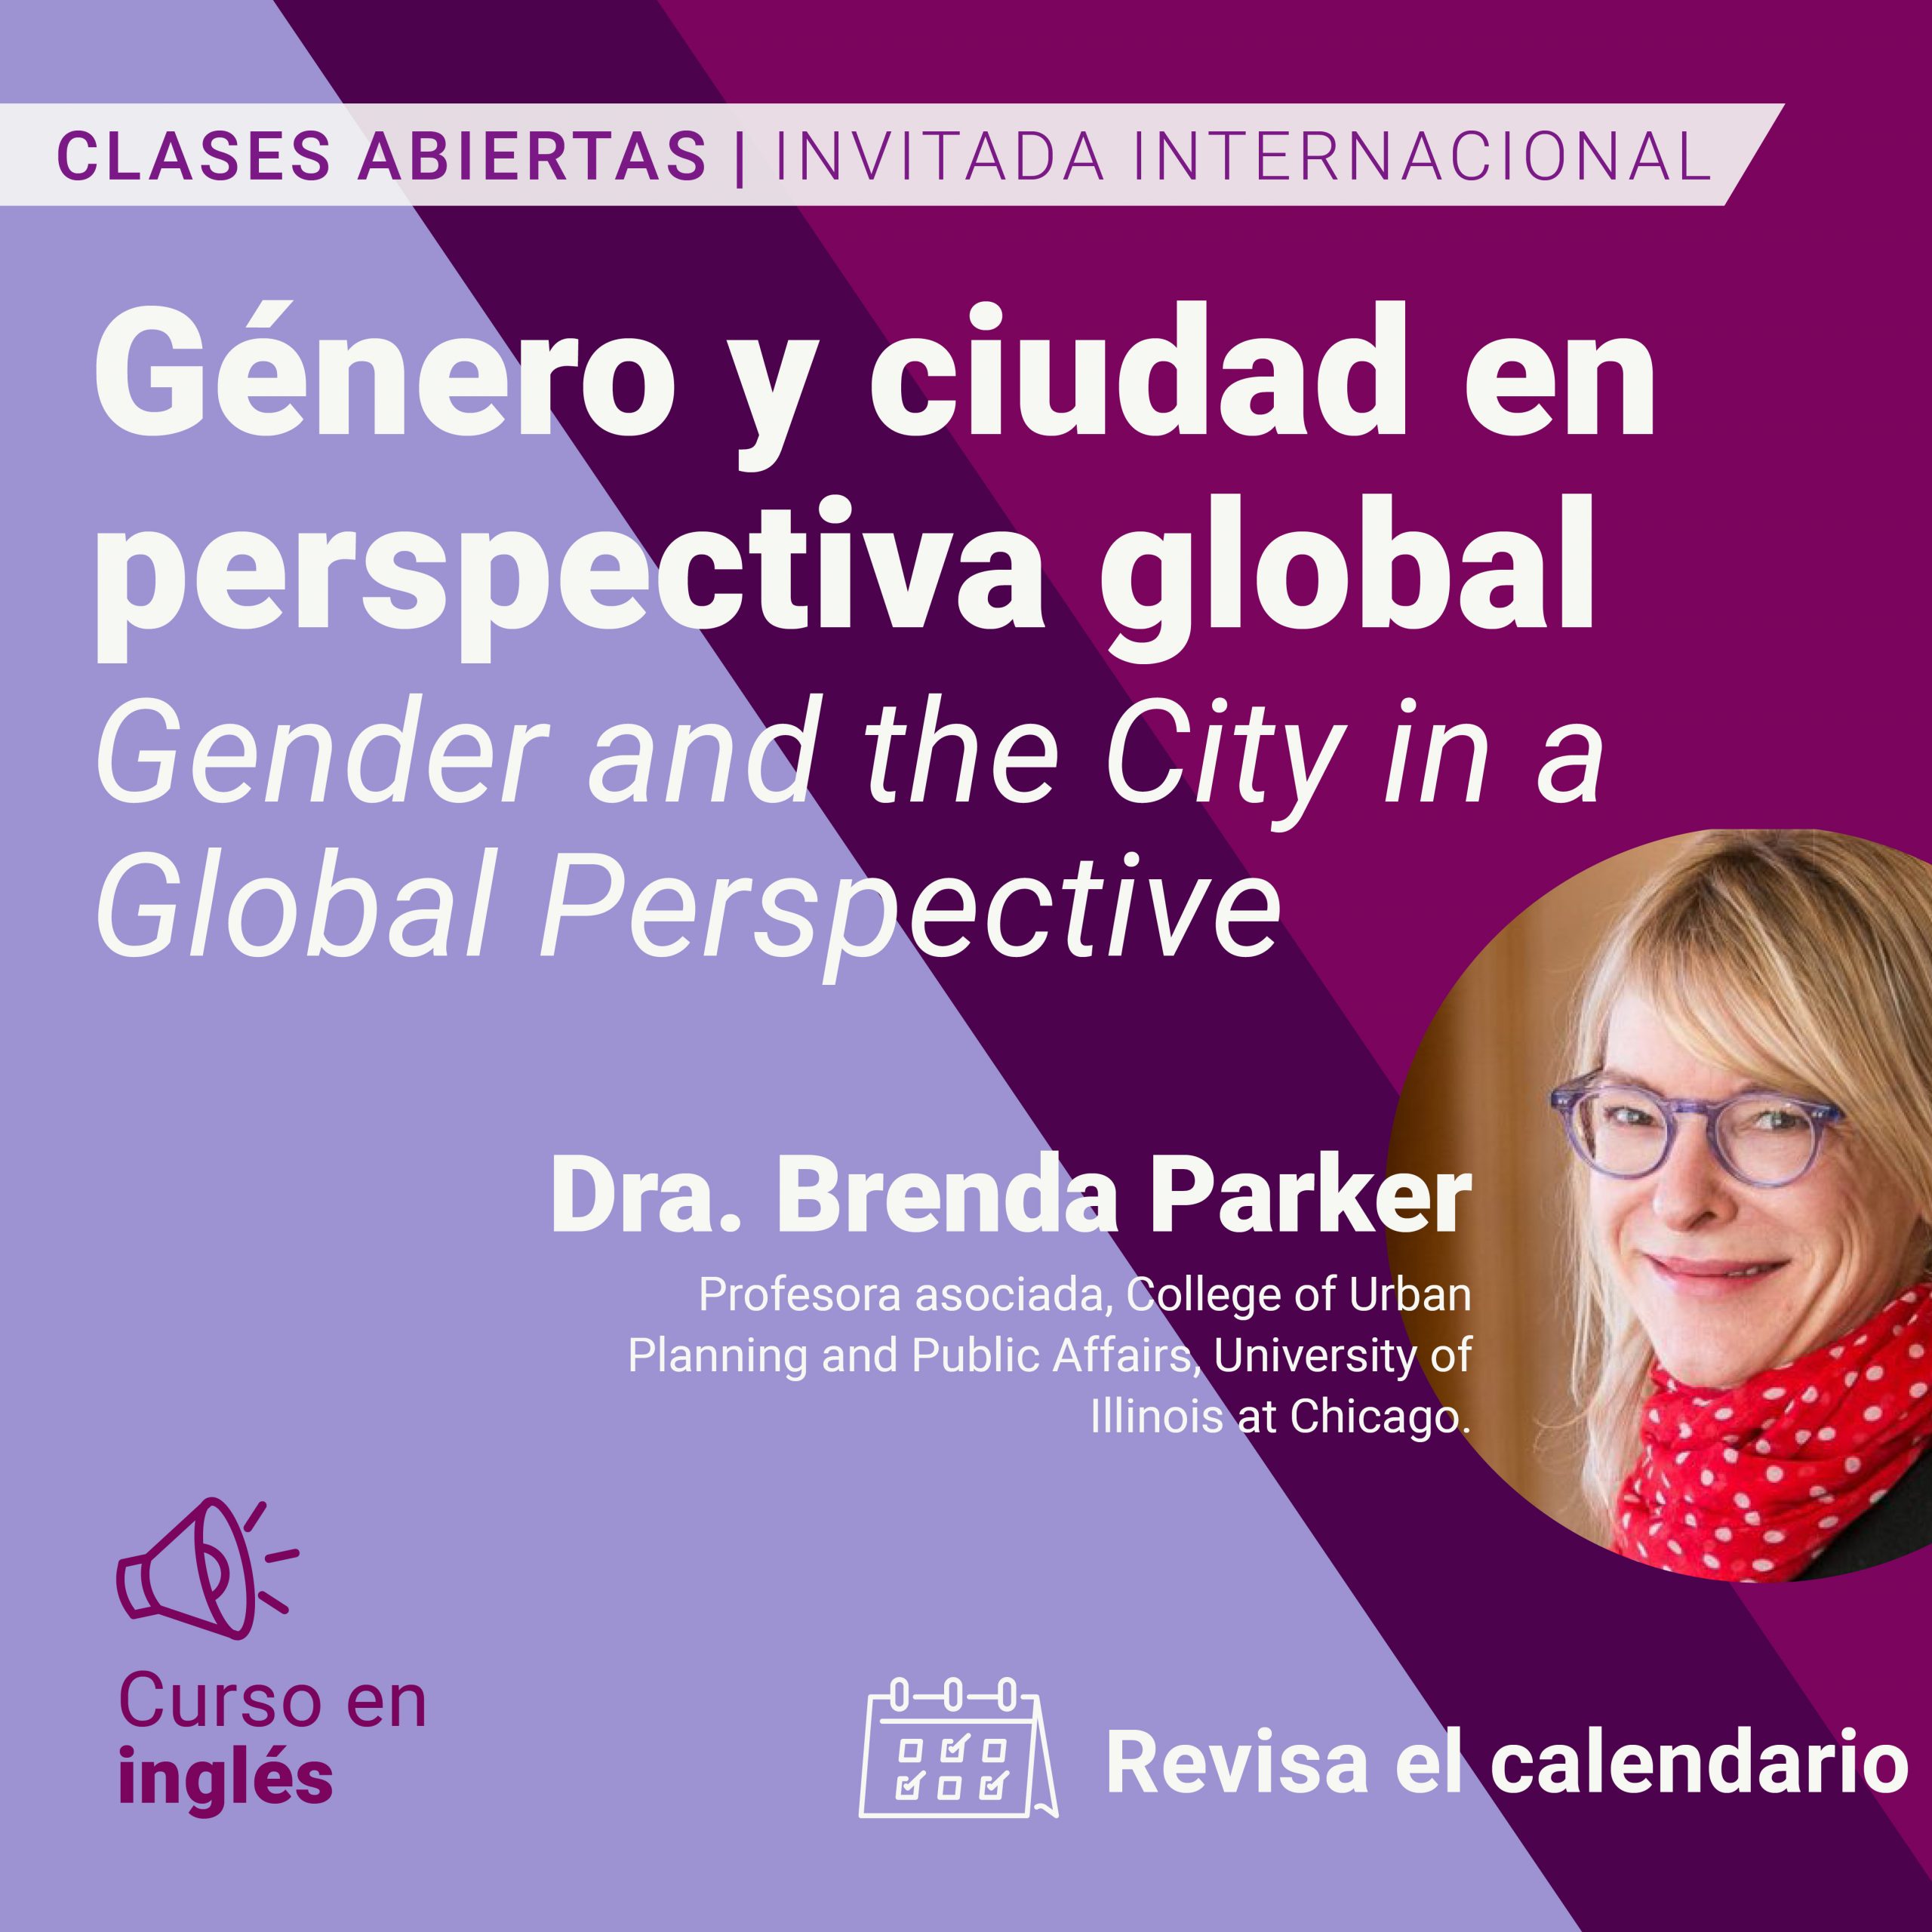 CLASES ABIERTAS | Género y ciudad en perspectiva global, con Brenda Parker